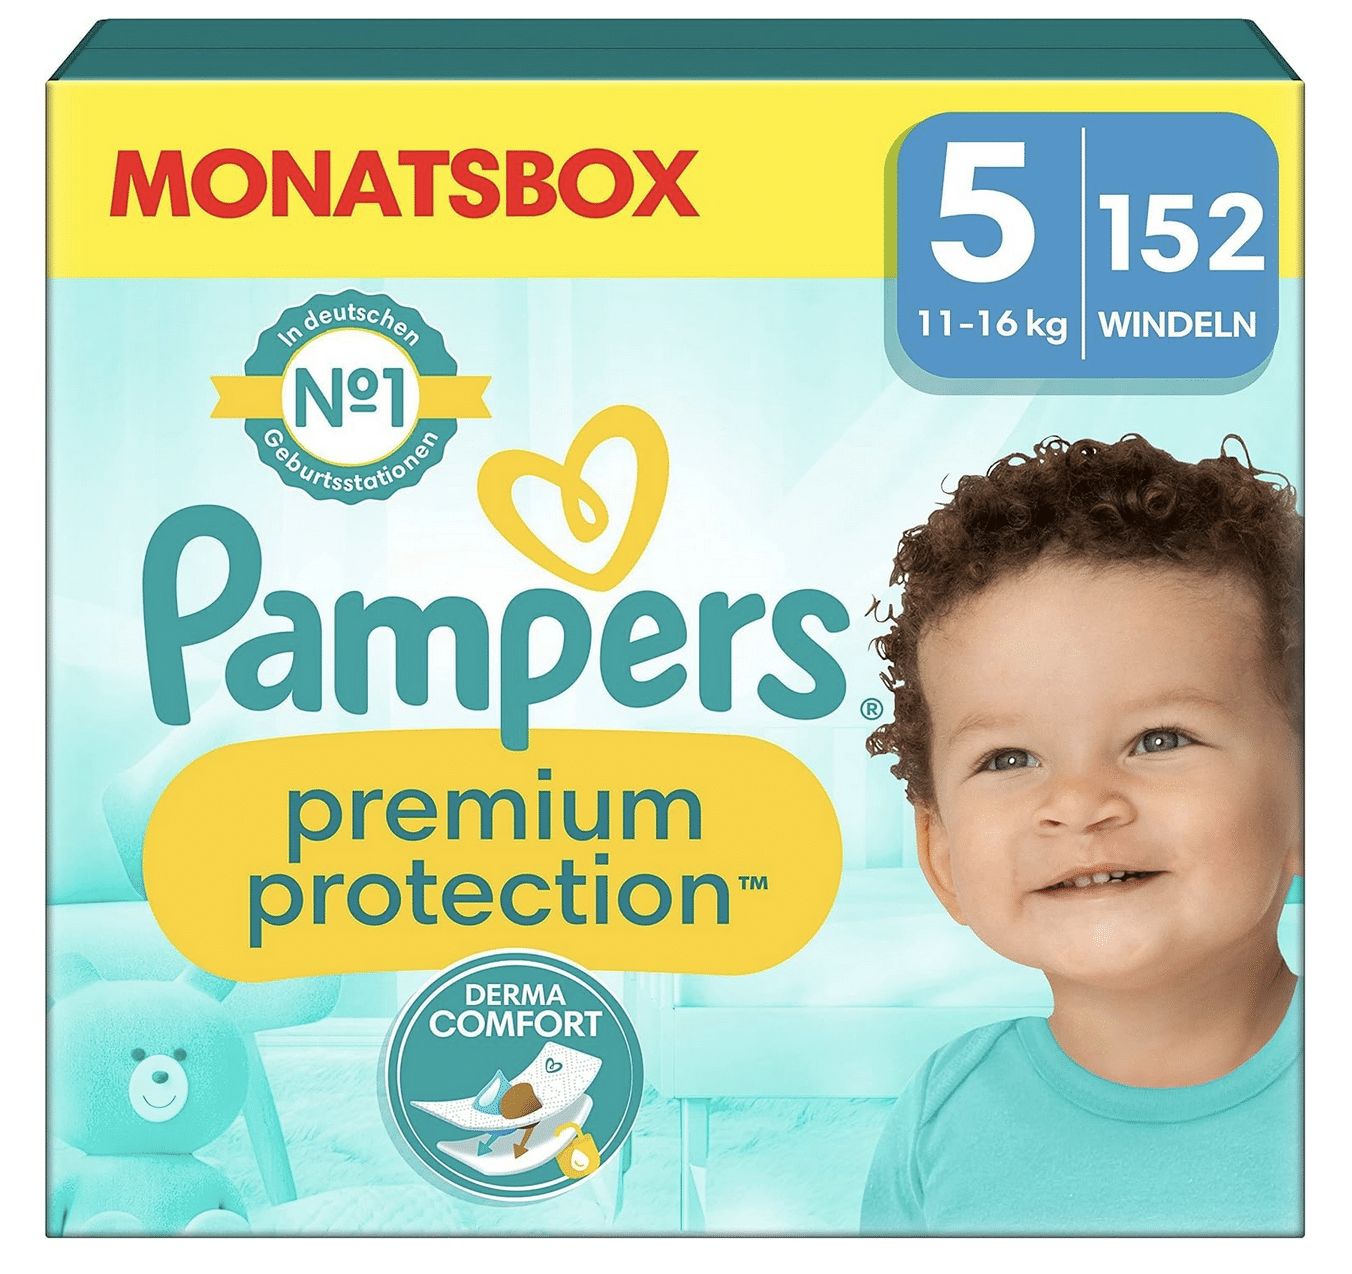 Thumbnail Pampers Premium Protection Windeln/ Pants in der Monatsbox in allen Größen z.B: 5er Windel für 26 Cent